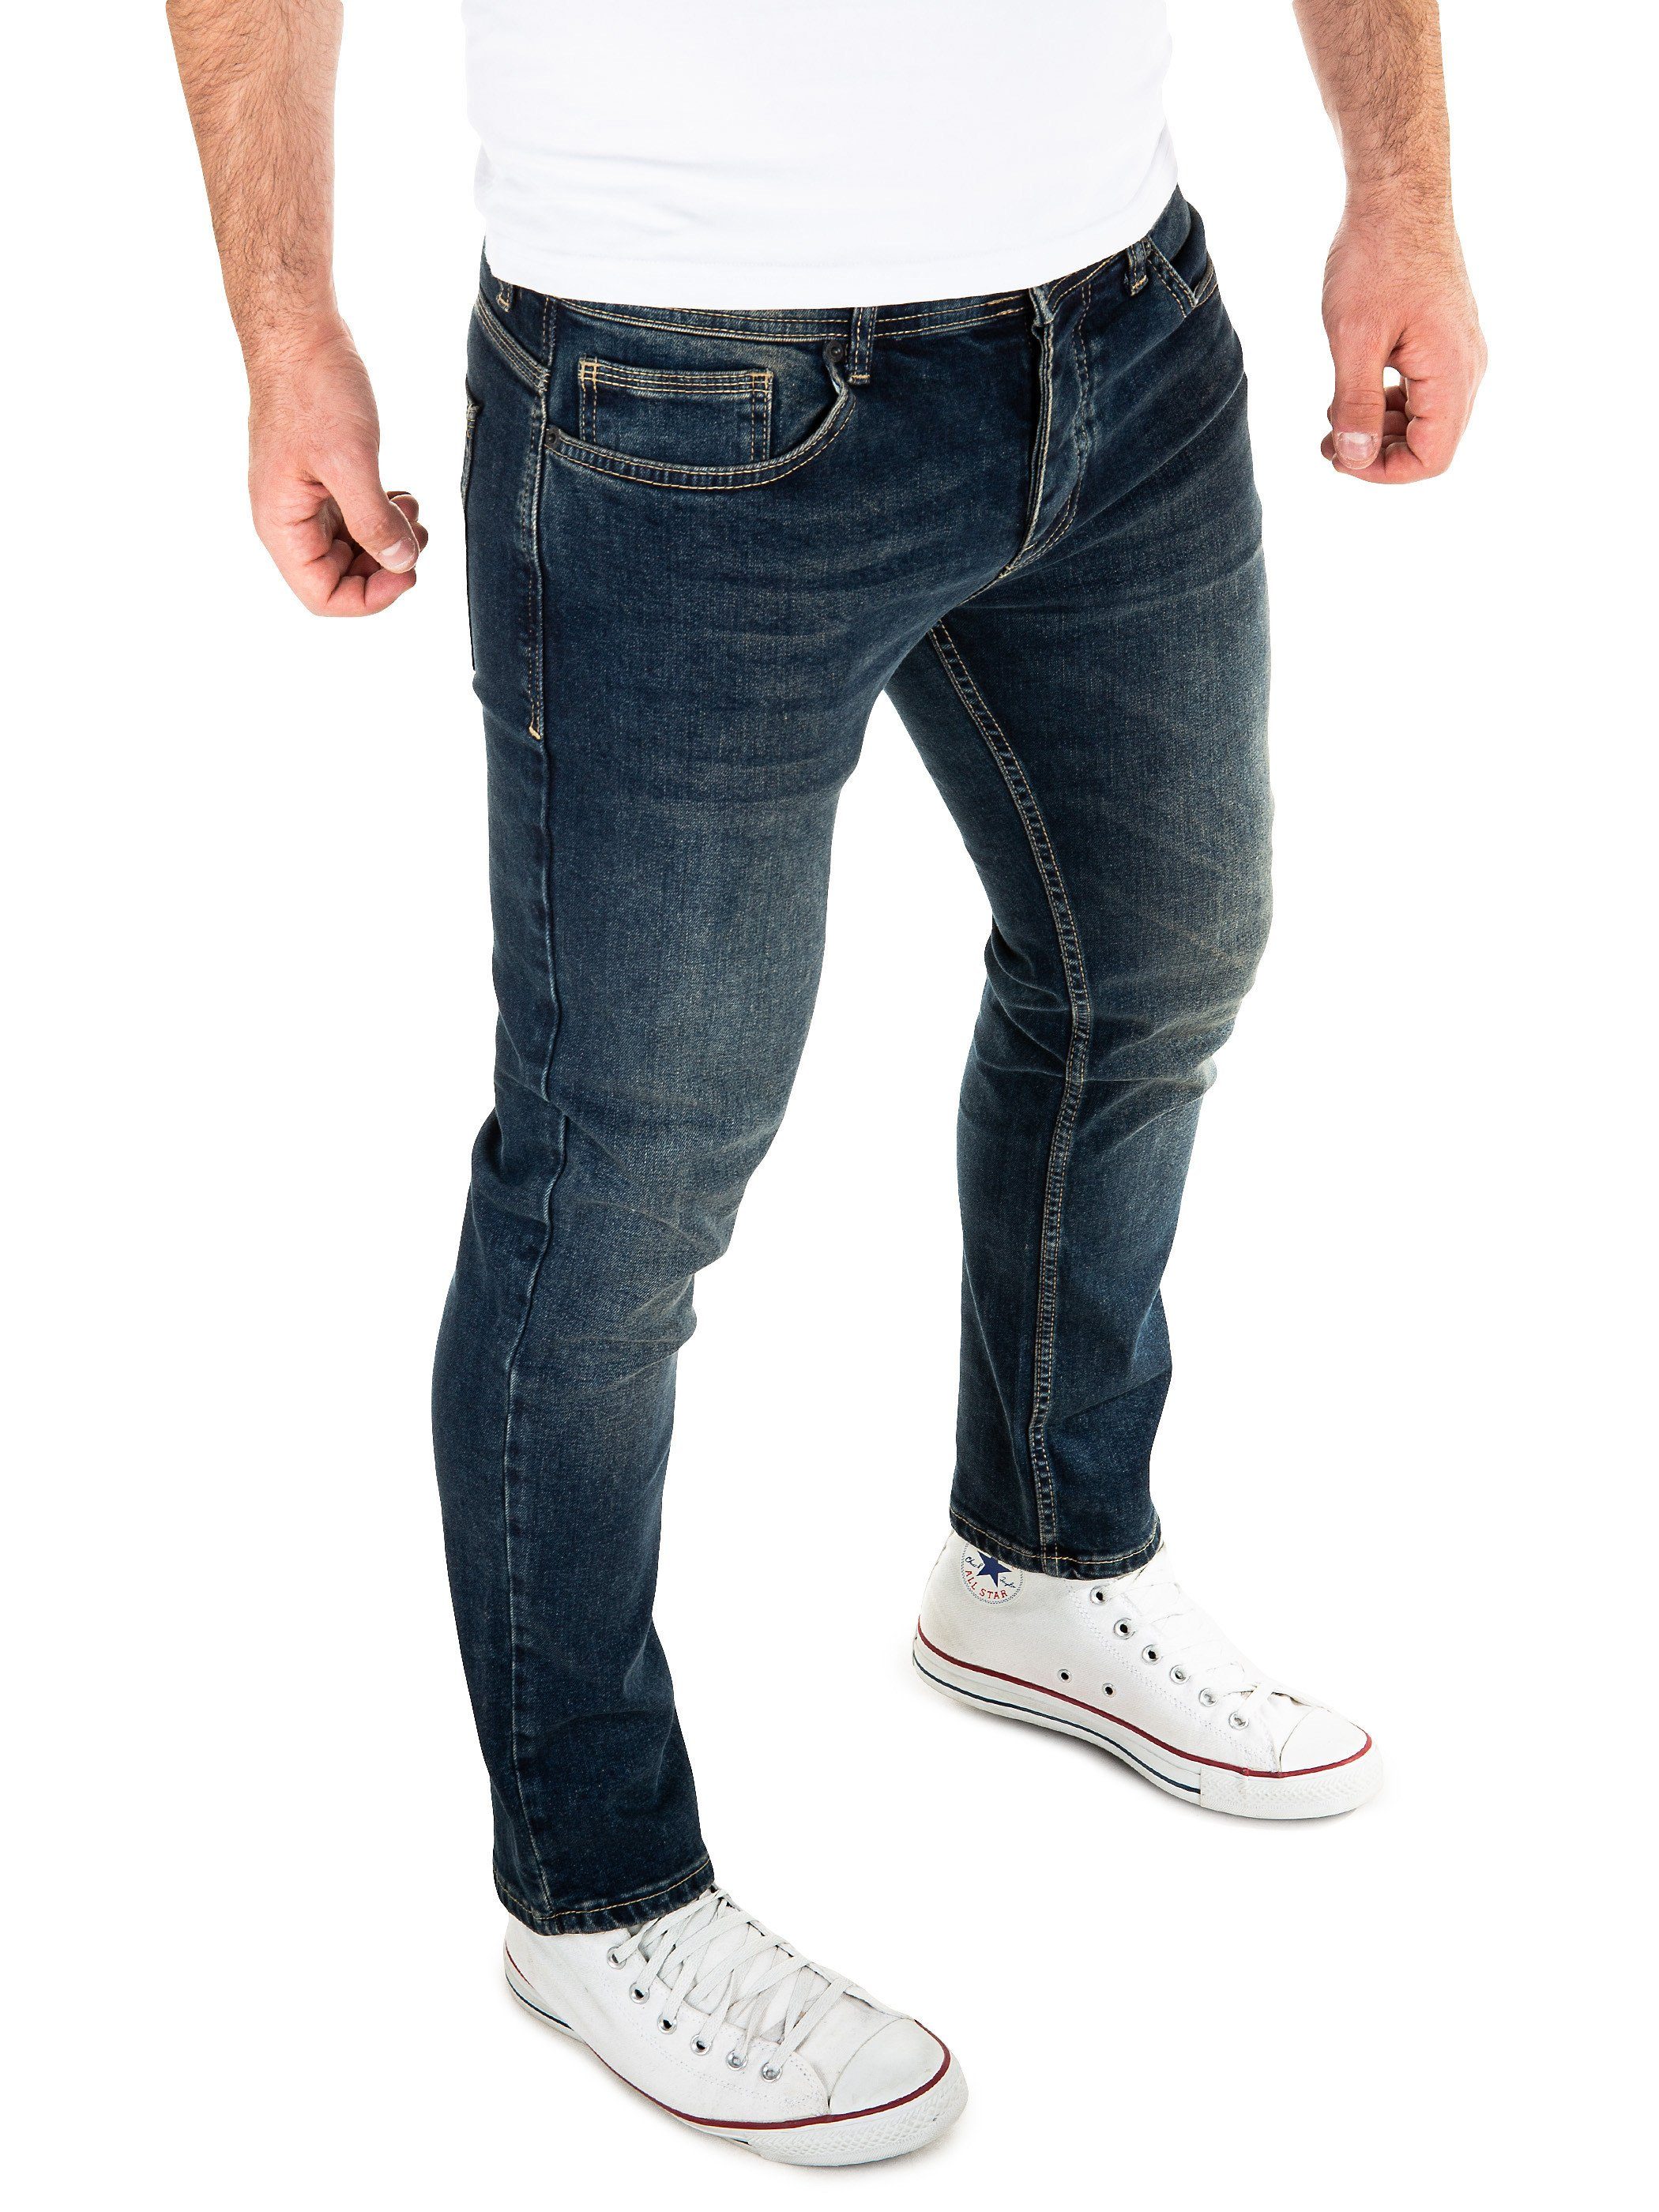 WOTEGA Slim-fit-Jeans »Alistar Stretch« Herren Jeans mit Stretchanteil  online kaufen | OTTO